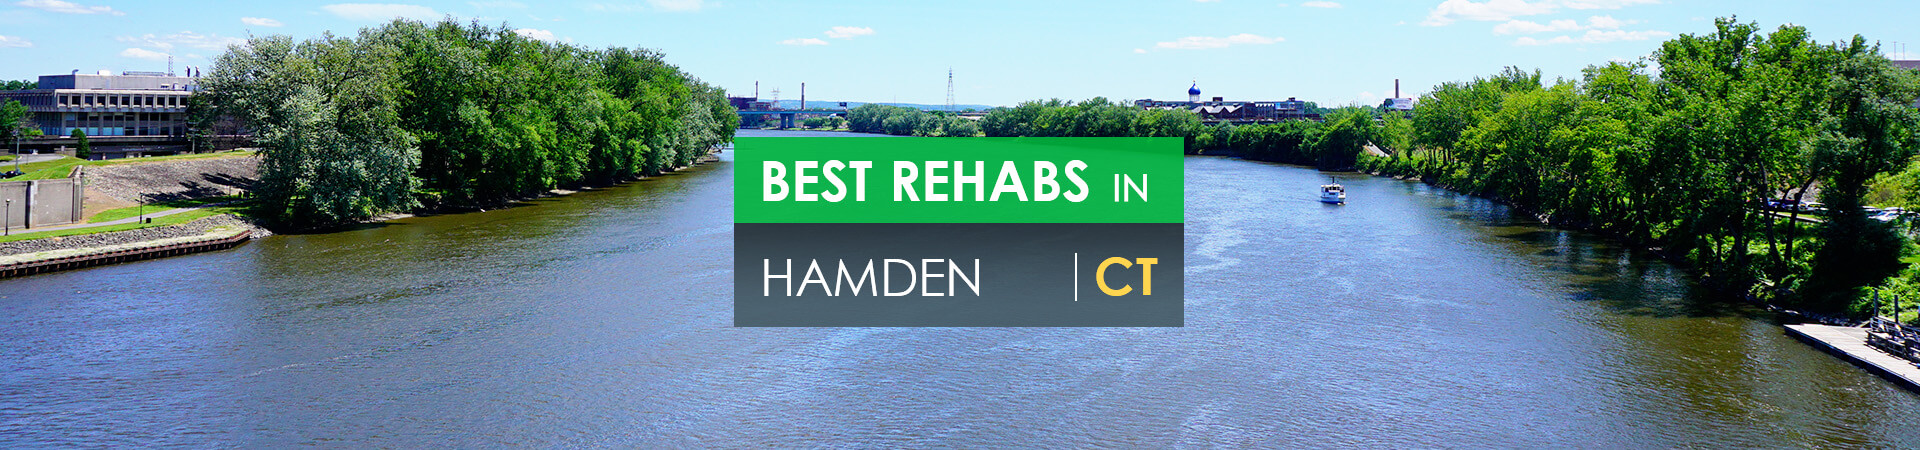 Best rehabs in Hamden, CT